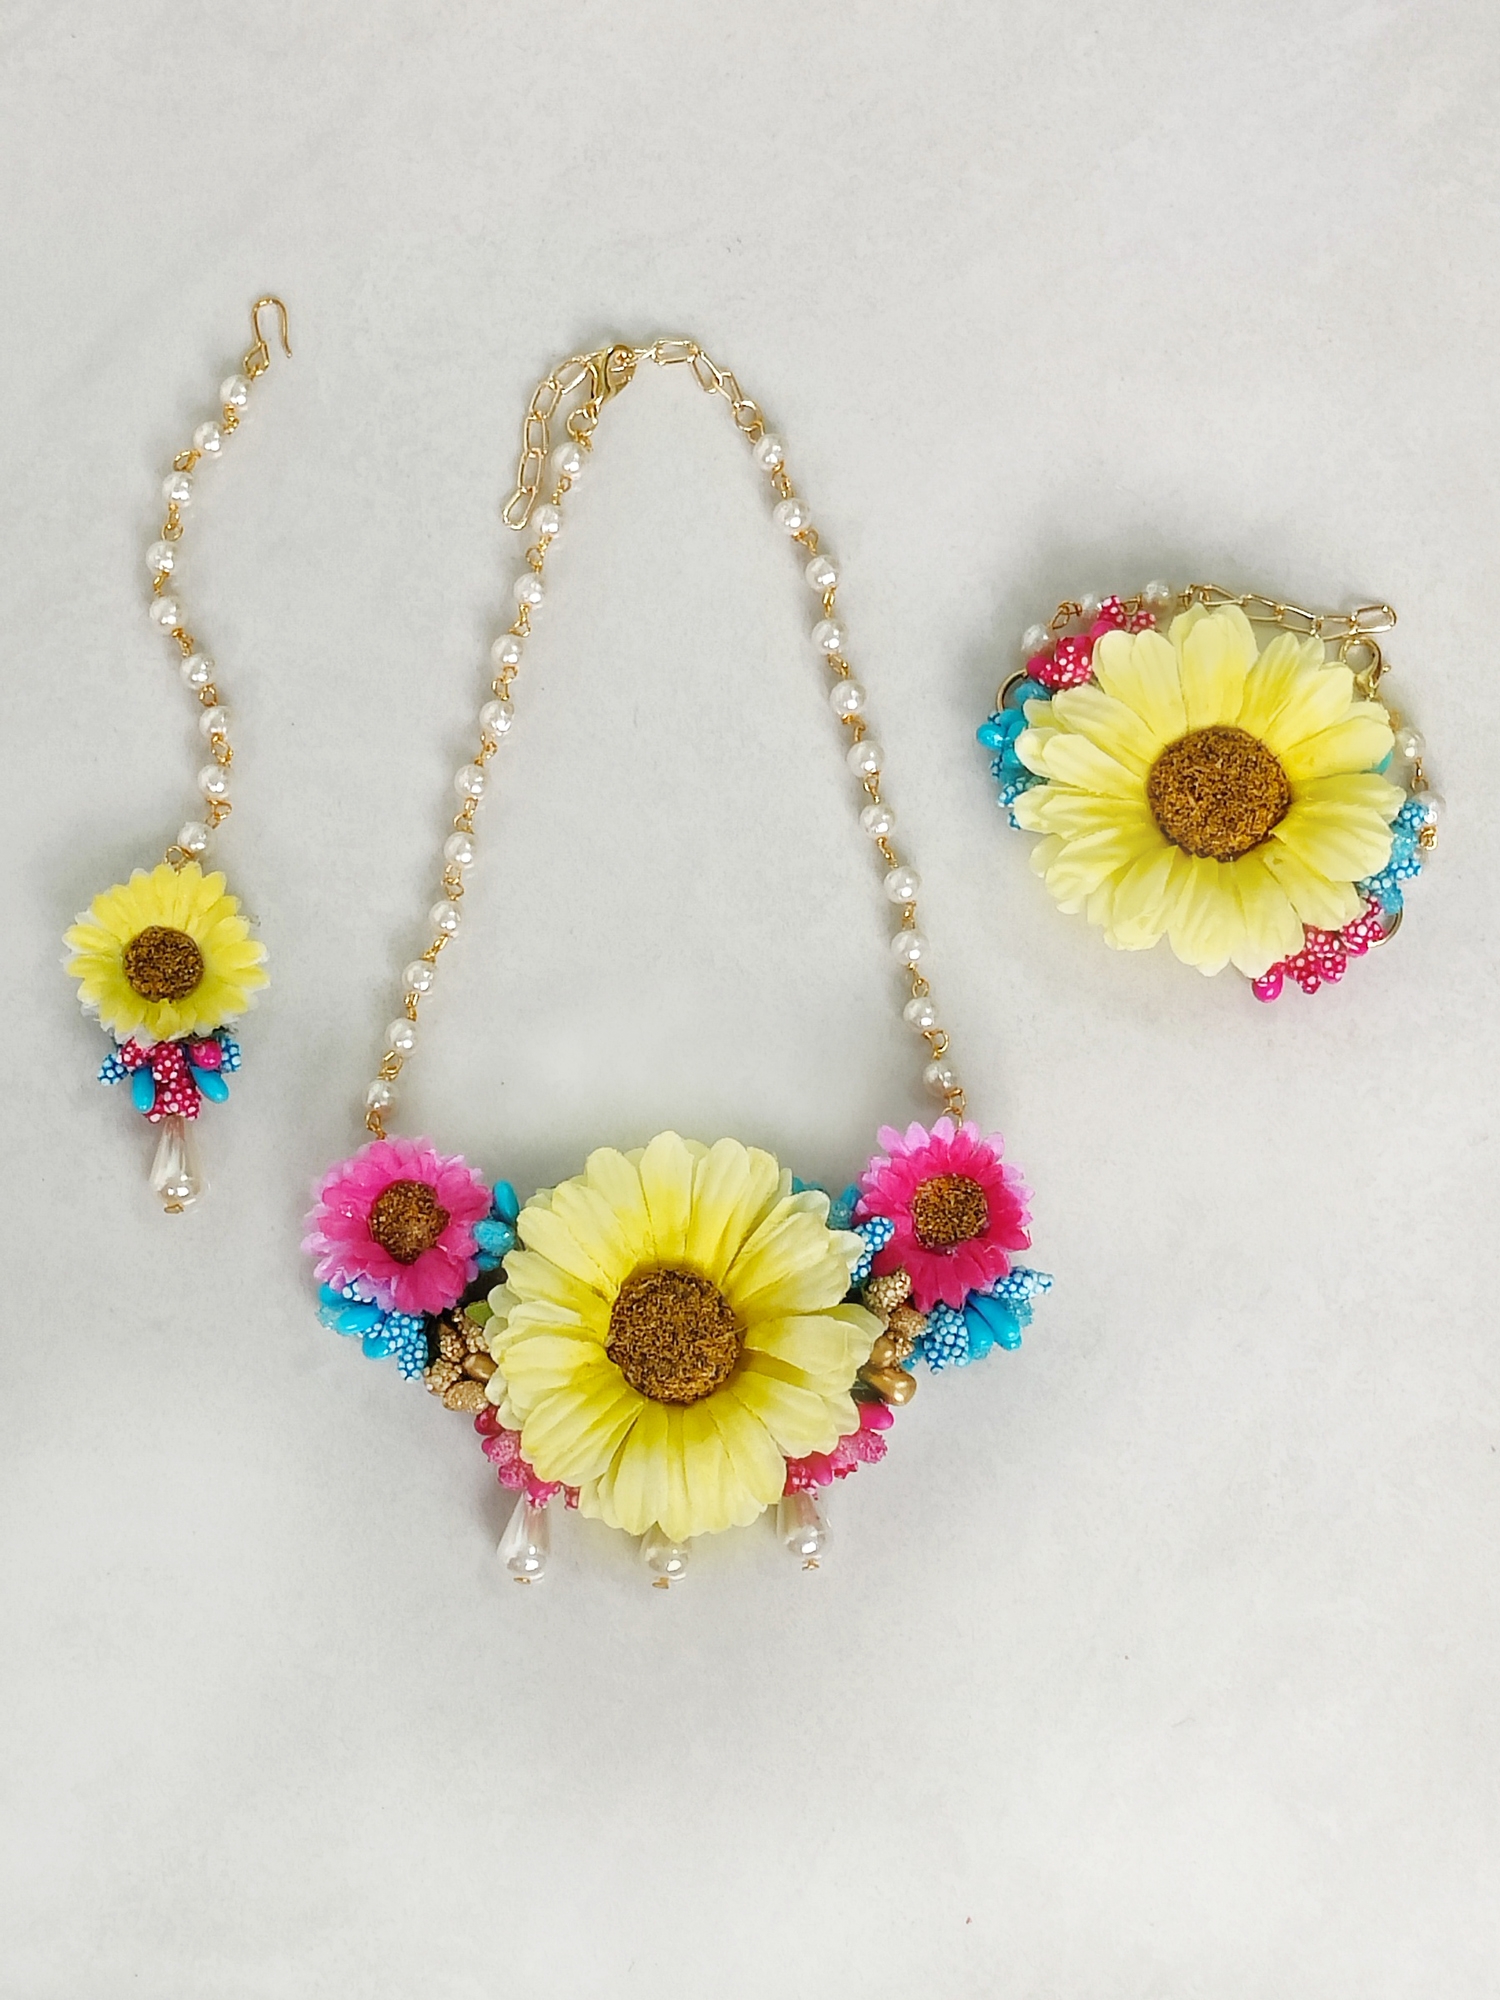 Eden Floral Necklace, Bracelet & mang Teeka Set - Multicoloured